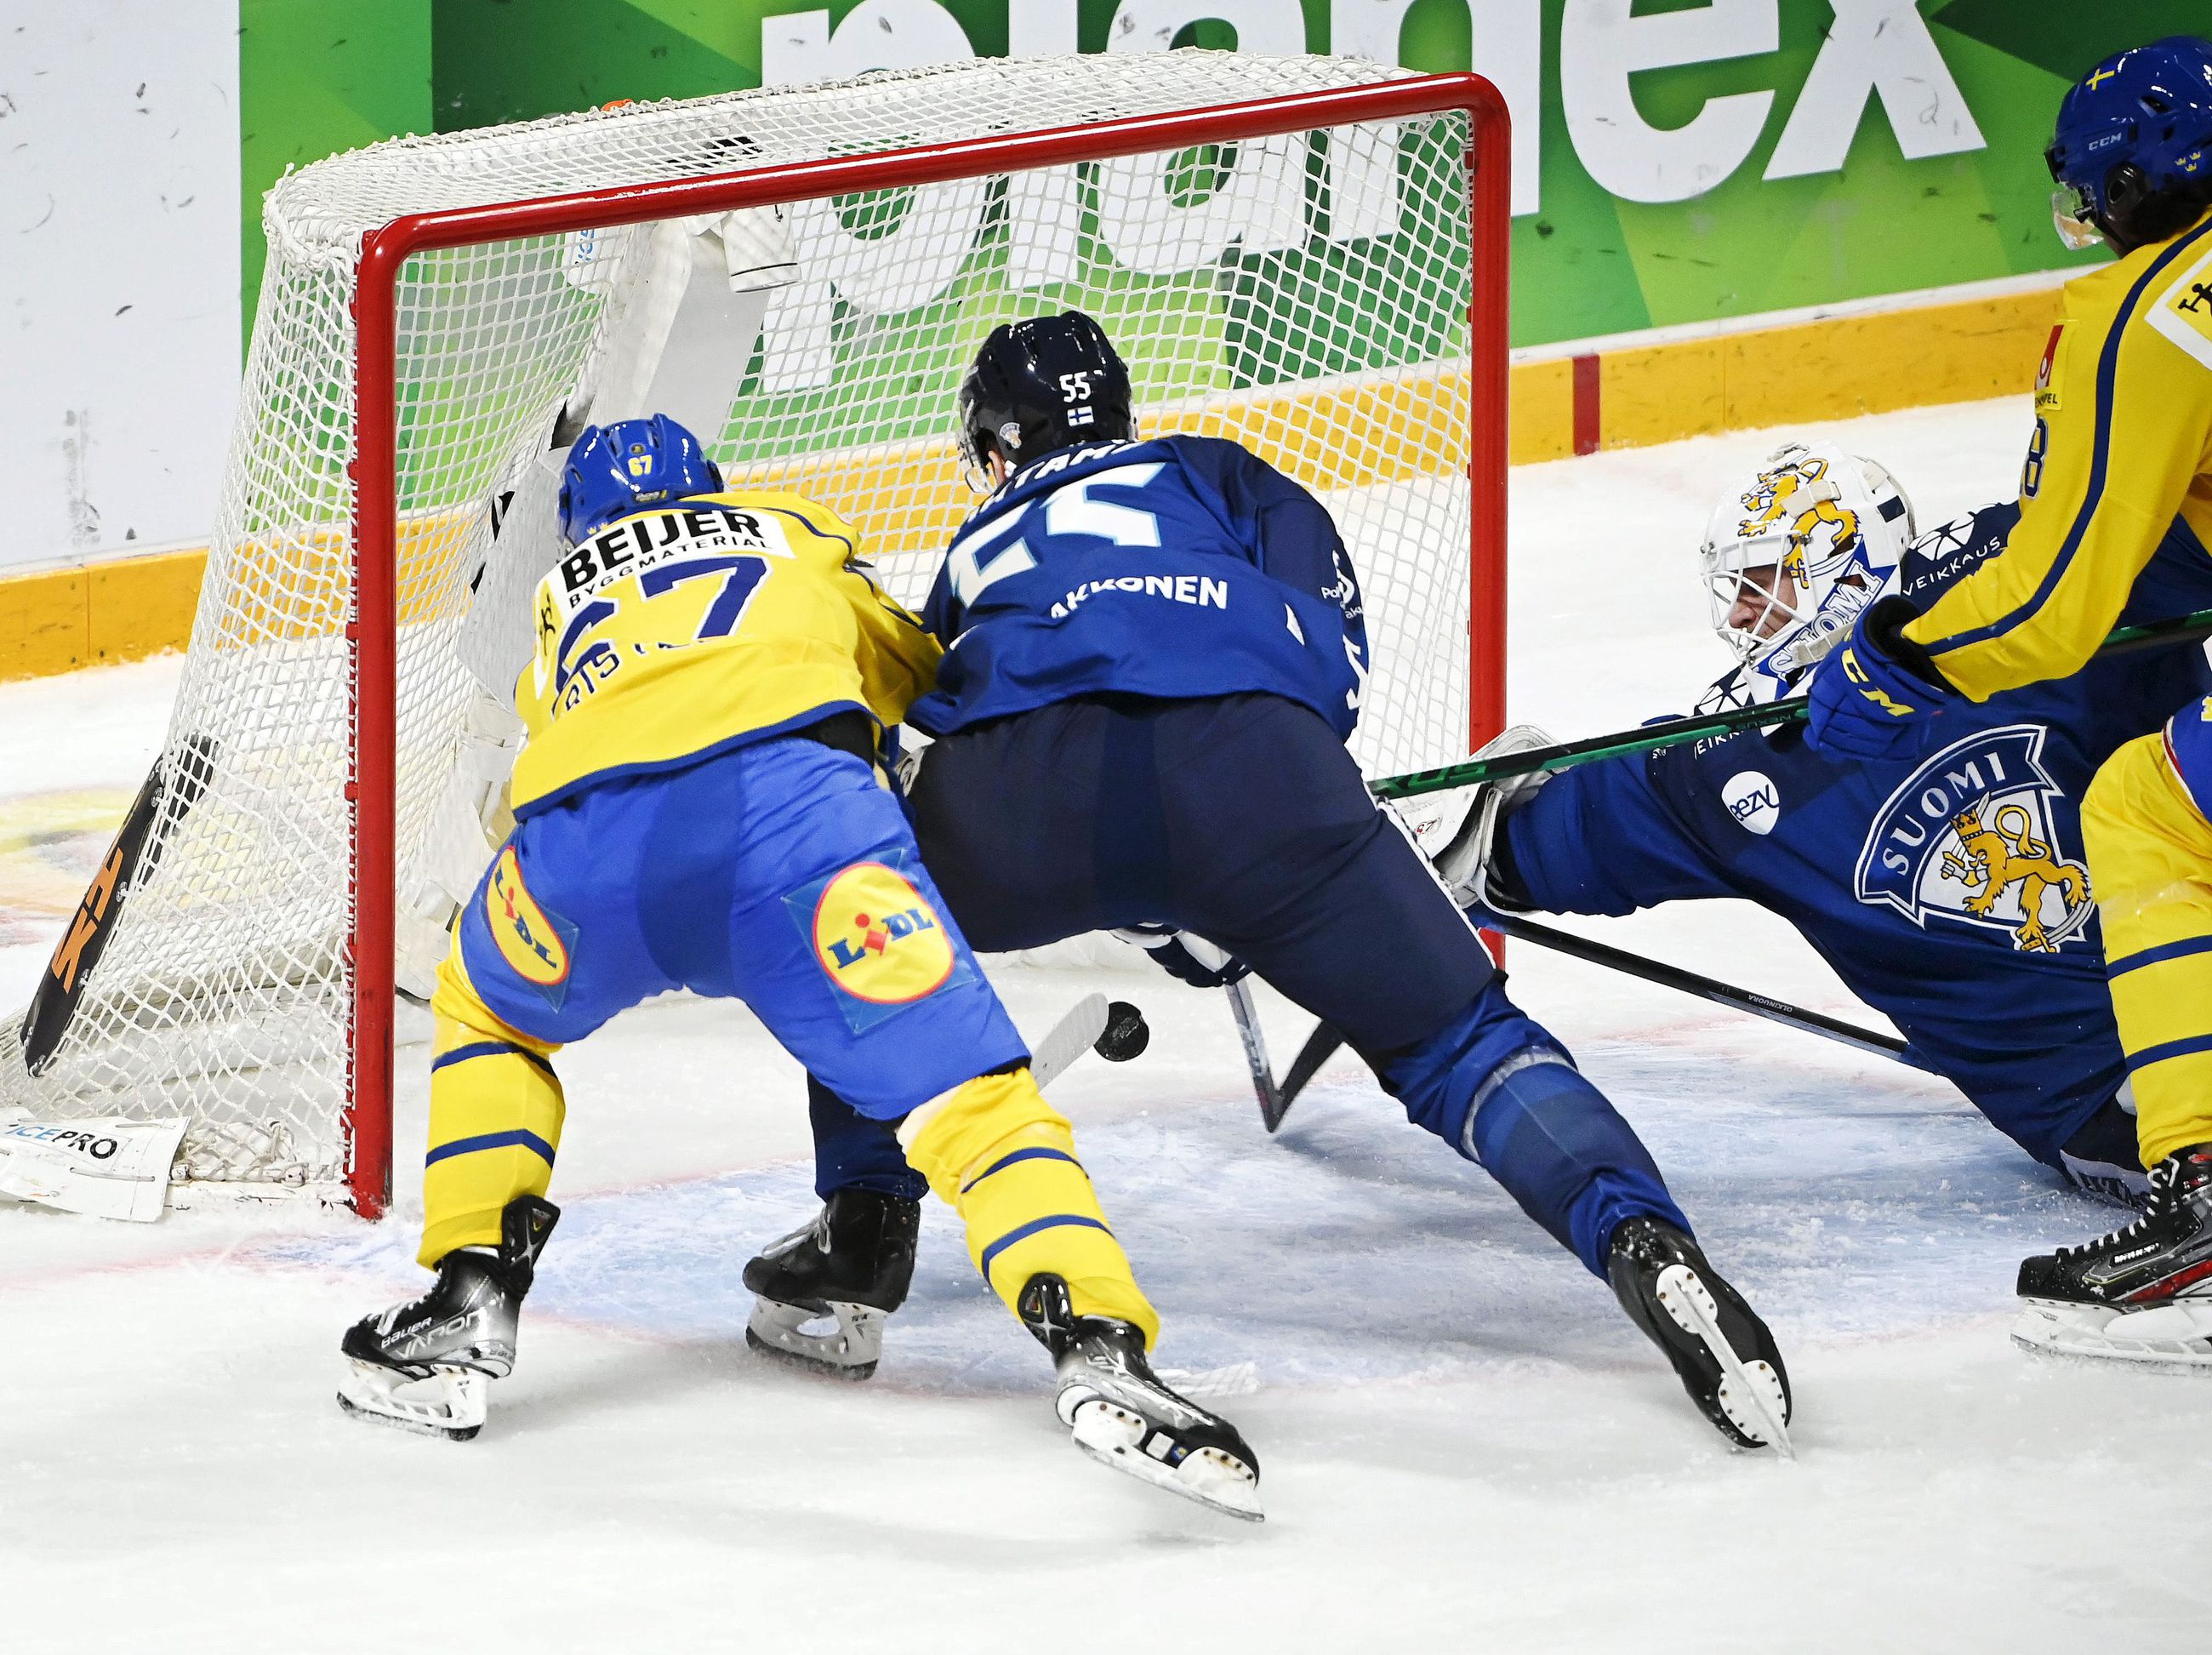 Ruotsi juotti Suomelle ylivoimamyrkkyä ja voitti Helsingin EHT-turnauksen |  Lapin Kansa